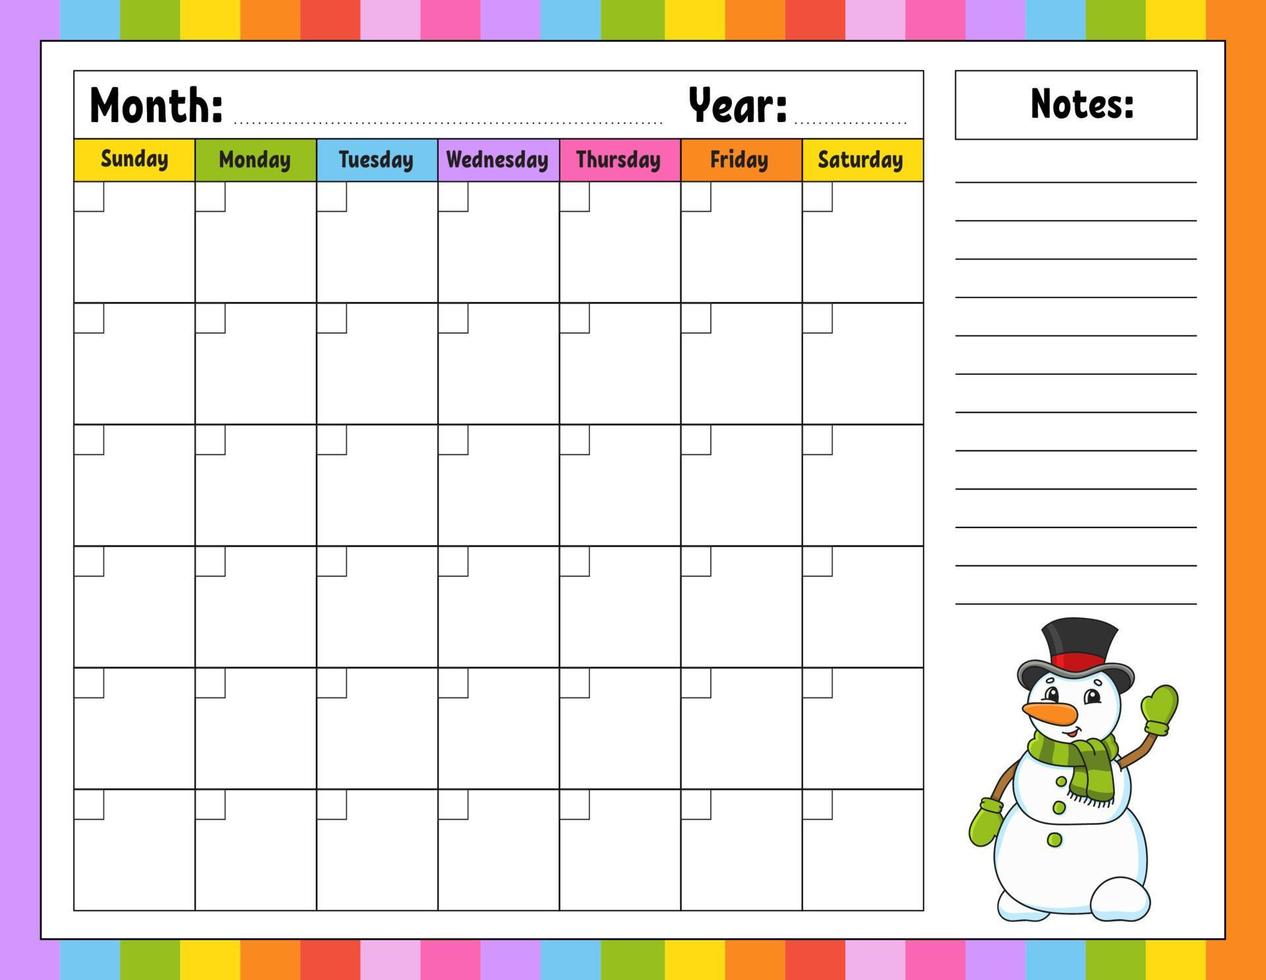 modelo de calendário em branco por um mês sem datas. design colorido com um personagem fofo. ilustração vetorial. vetor